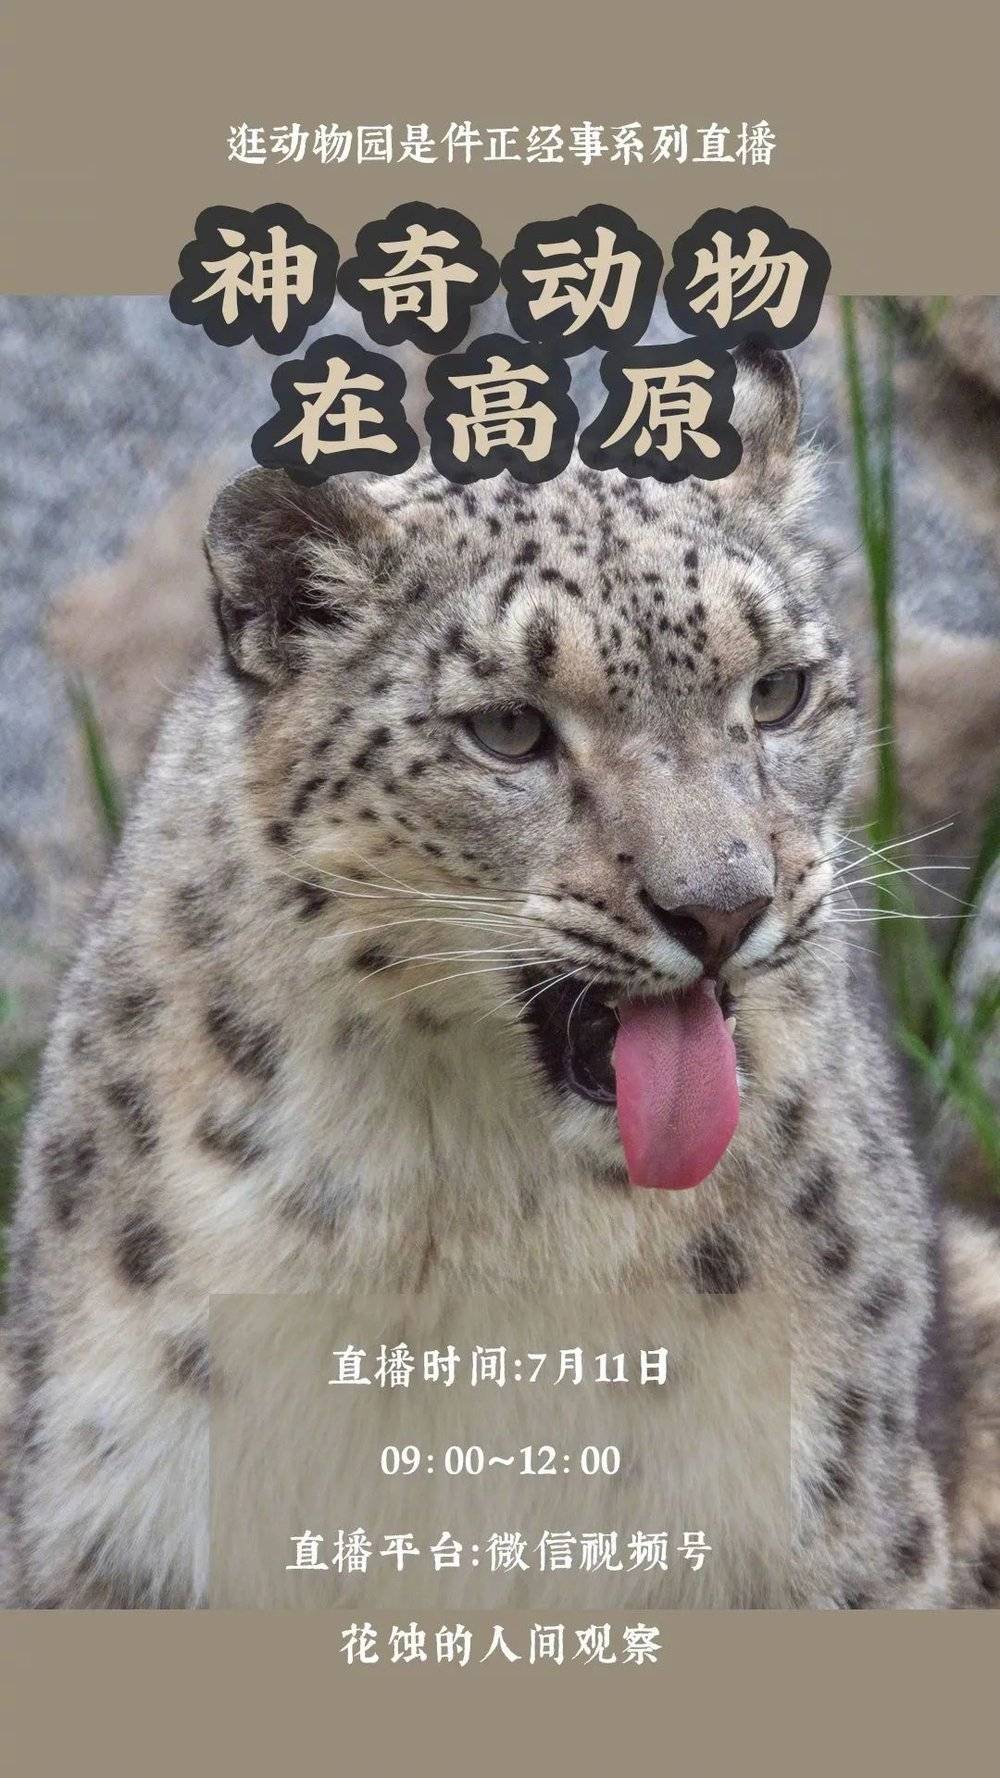 上图：花老师在广州动物园举行的“用动物园技术给宠物做丰容”主题直播，给观众呈现动物园内的一些新变化。@花落成蚀